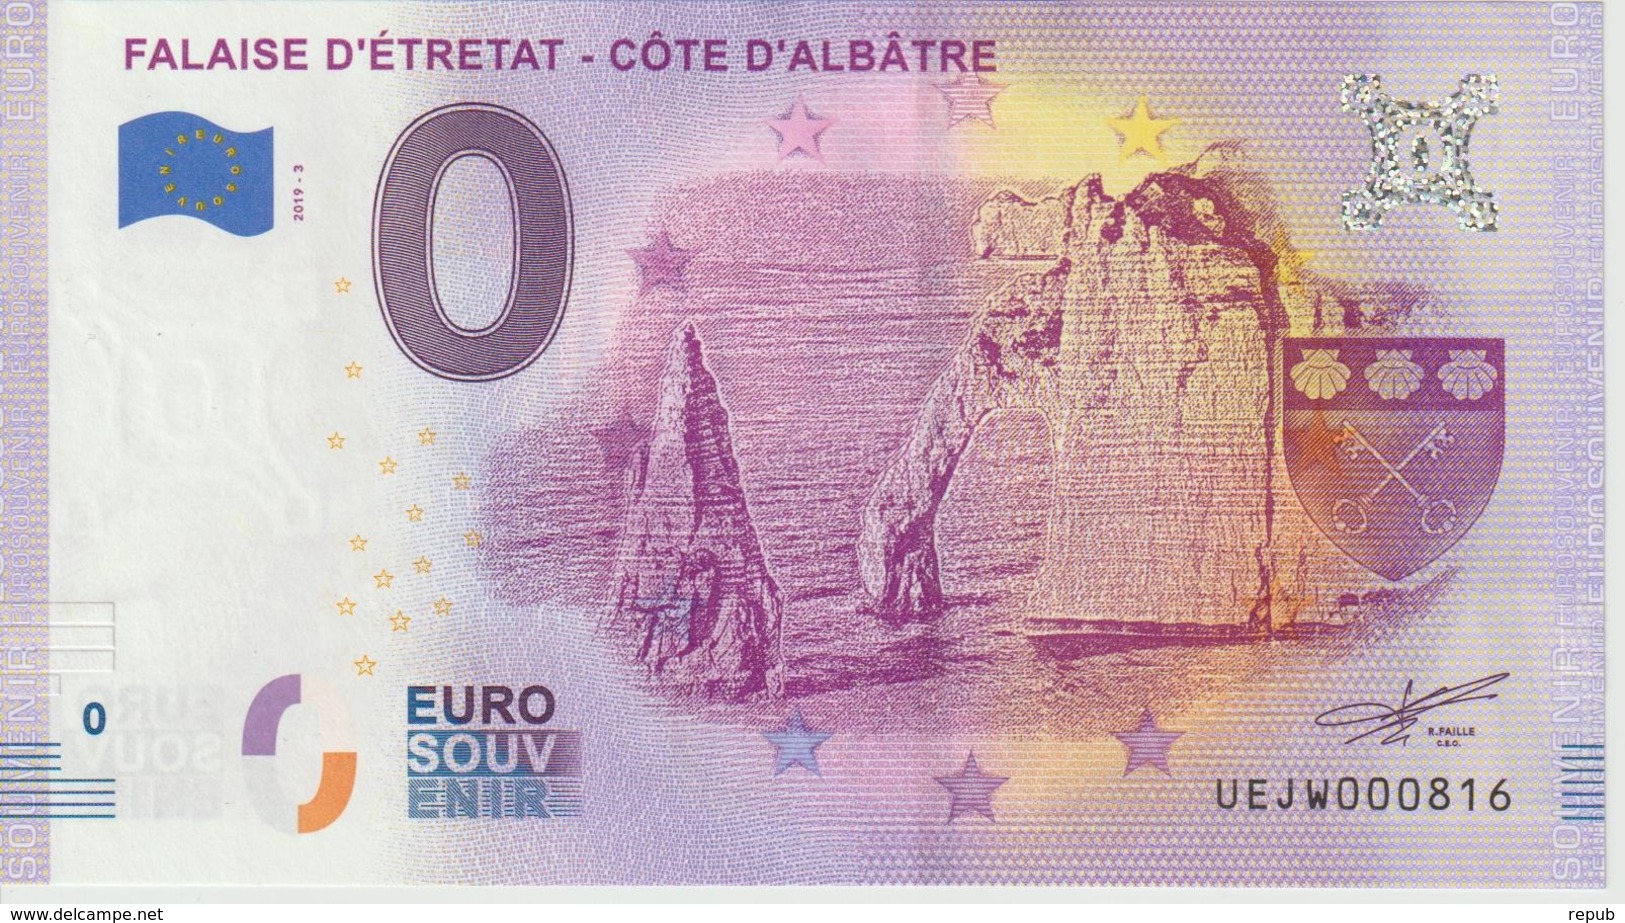 Billet Touristique 0 Euro Souvenir France 76 Falaise D'Etretat 2019-3 N°UEJW000816 - Private Proofs / Unofficial